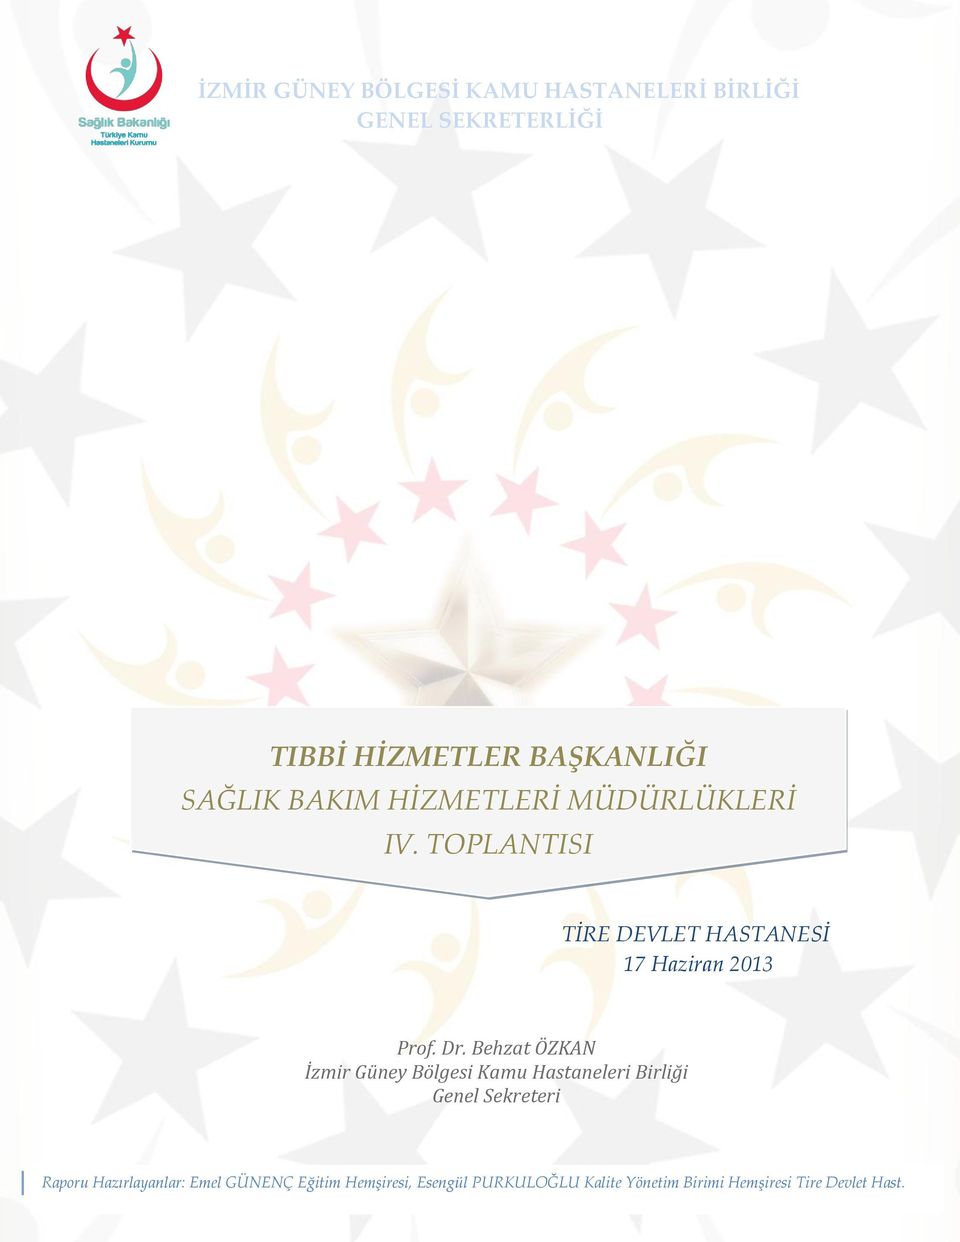 Behzat ÖZKAN İzmir Güney Bölgesi Kamu Hastaneleri Birliği Genel Sekreteri Raporu